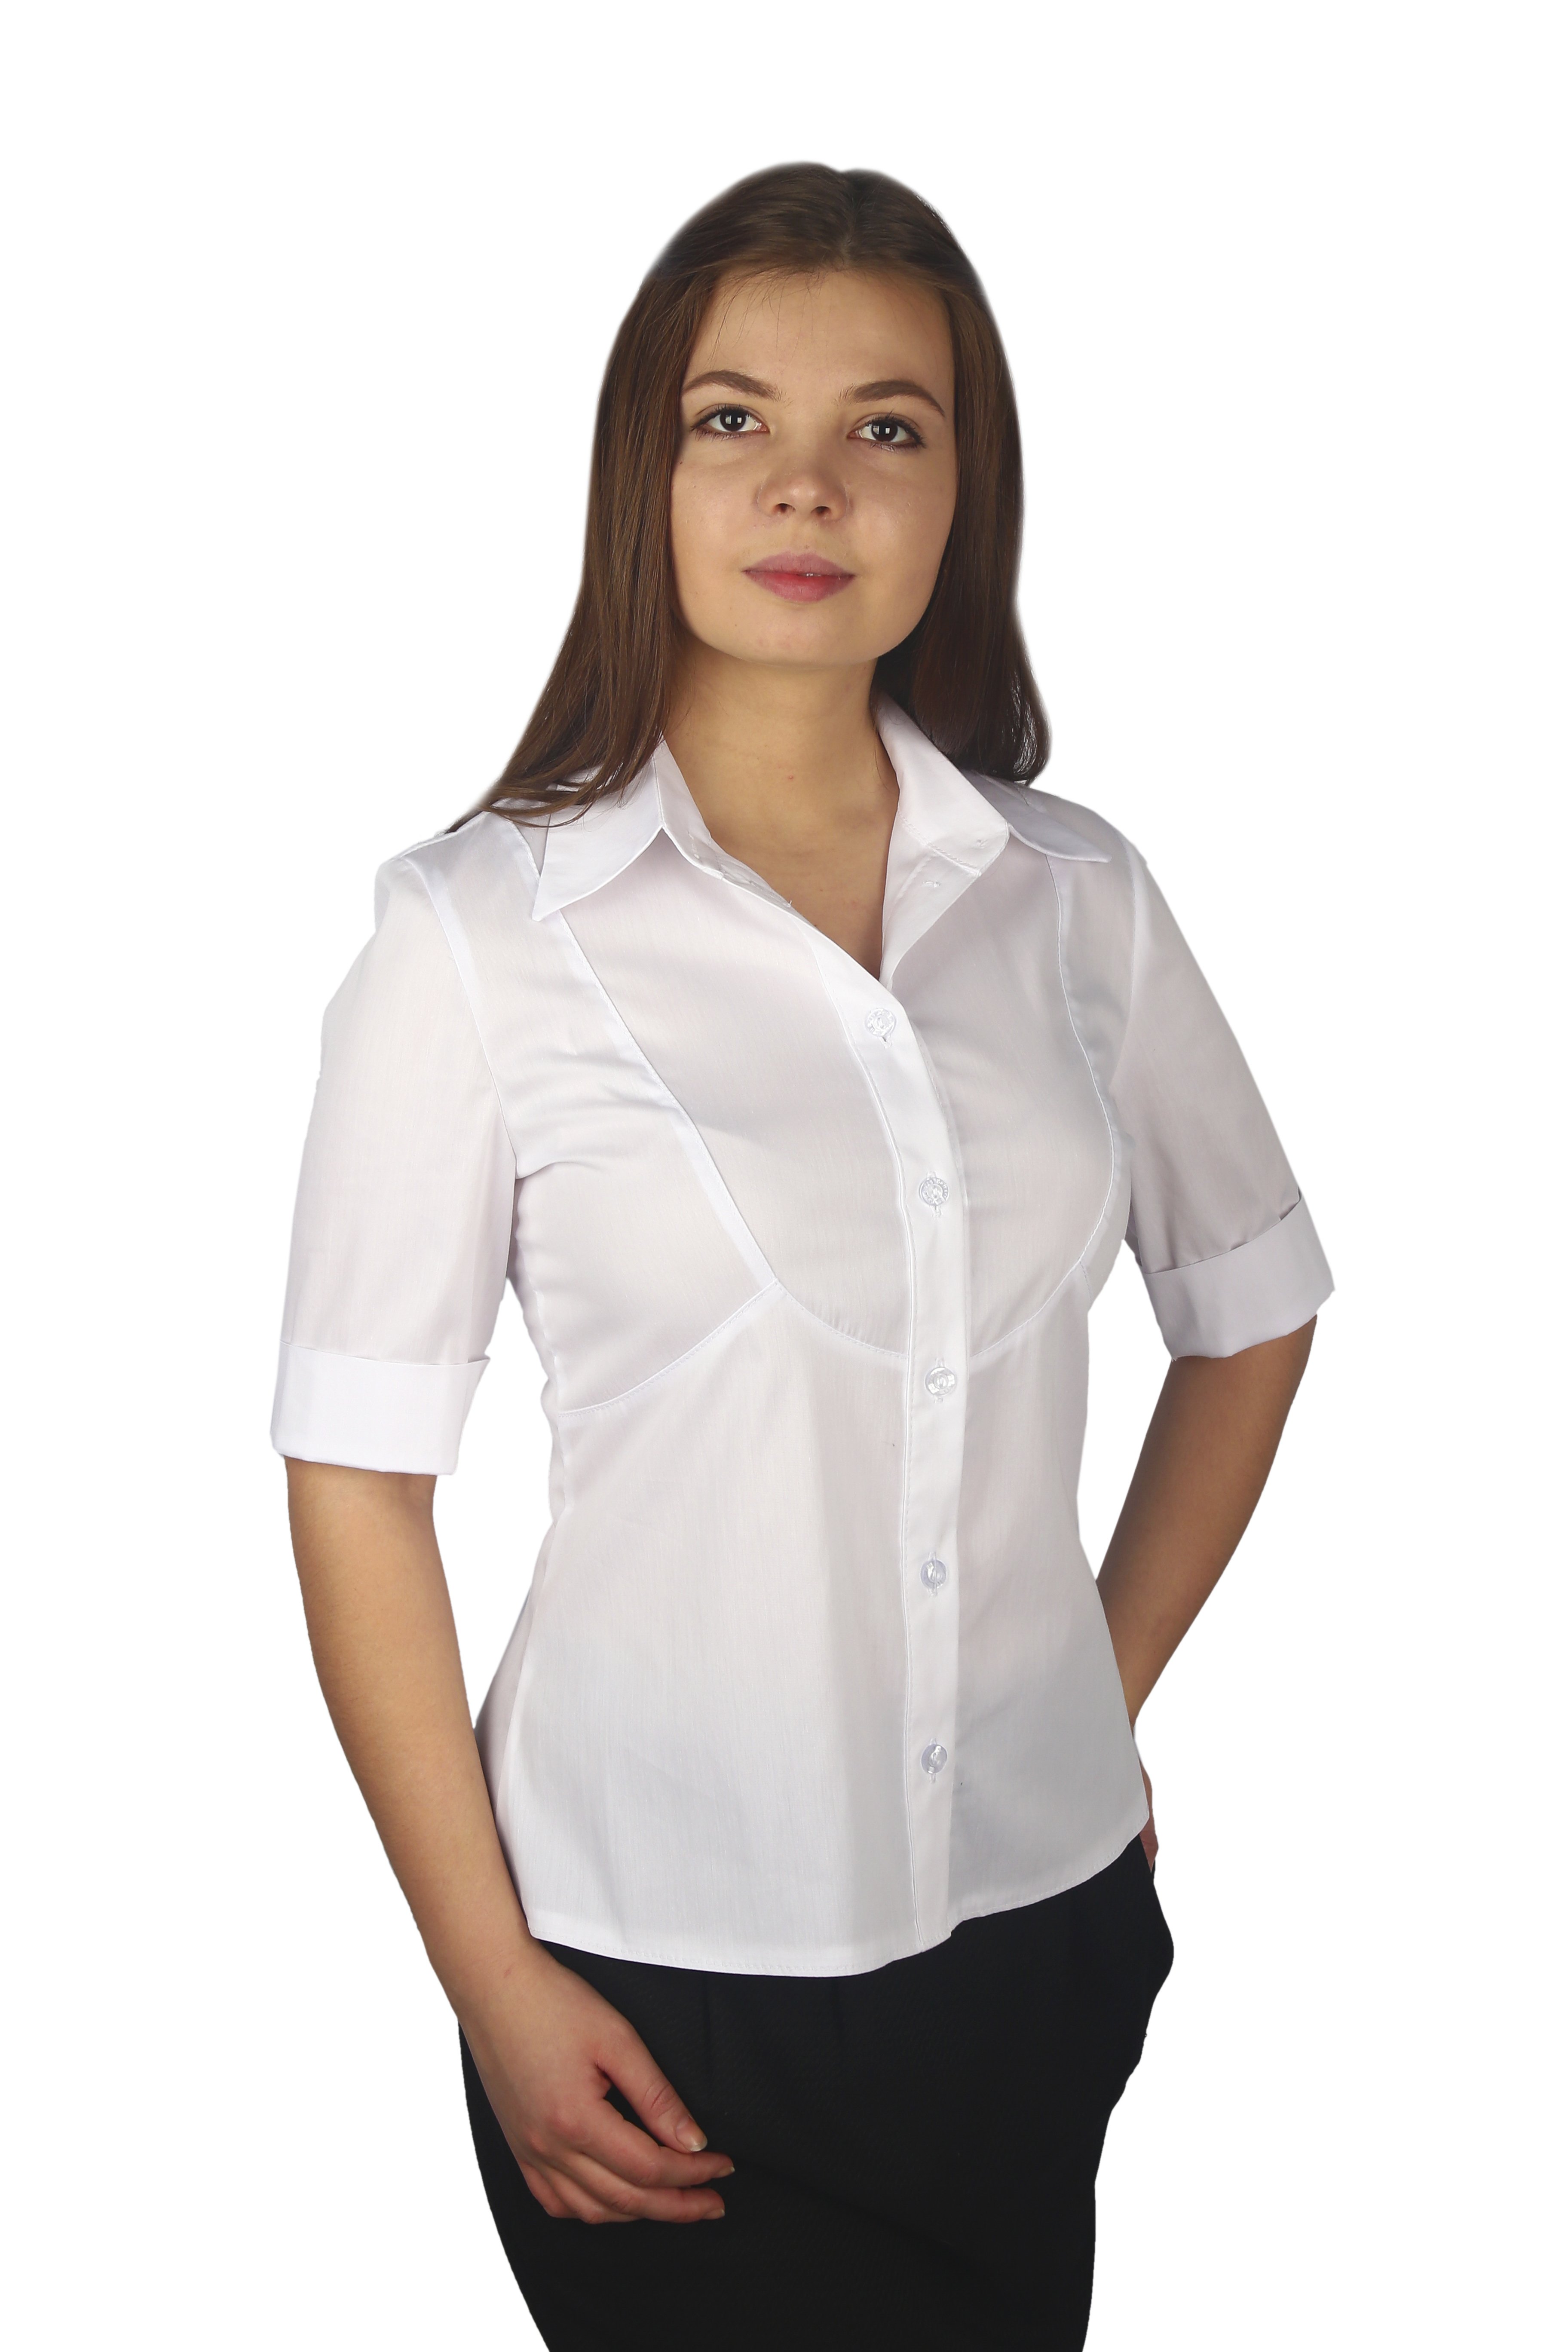 Недорогие блузки интернете. Блузка женская. Белая блузка. Белая блузка женская. Белая рубашка женская.